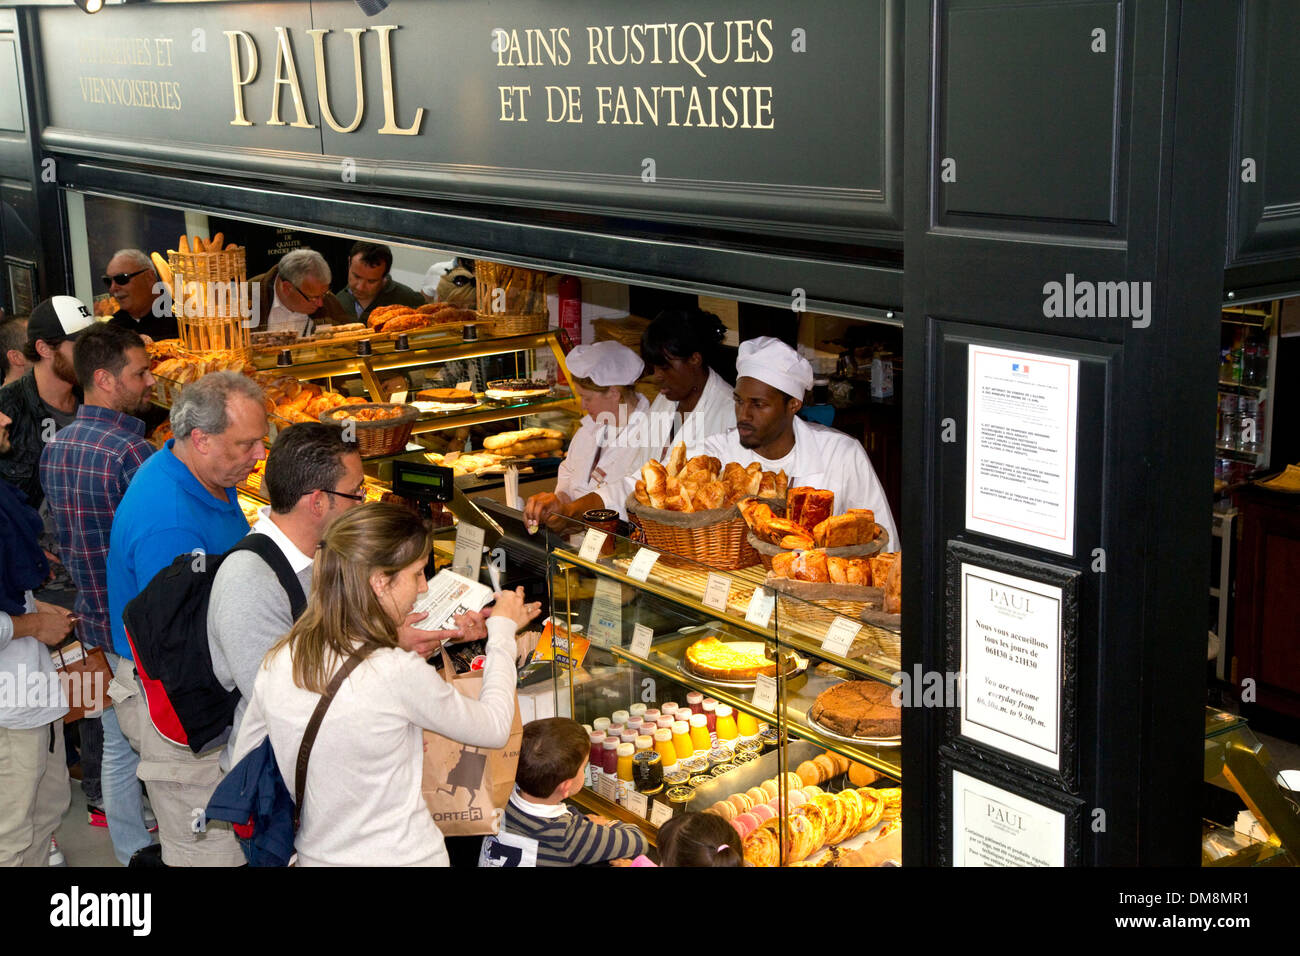 Paul restaurant à l'aéroport Charles de Gaulle, Paris, France. Banque D'Images